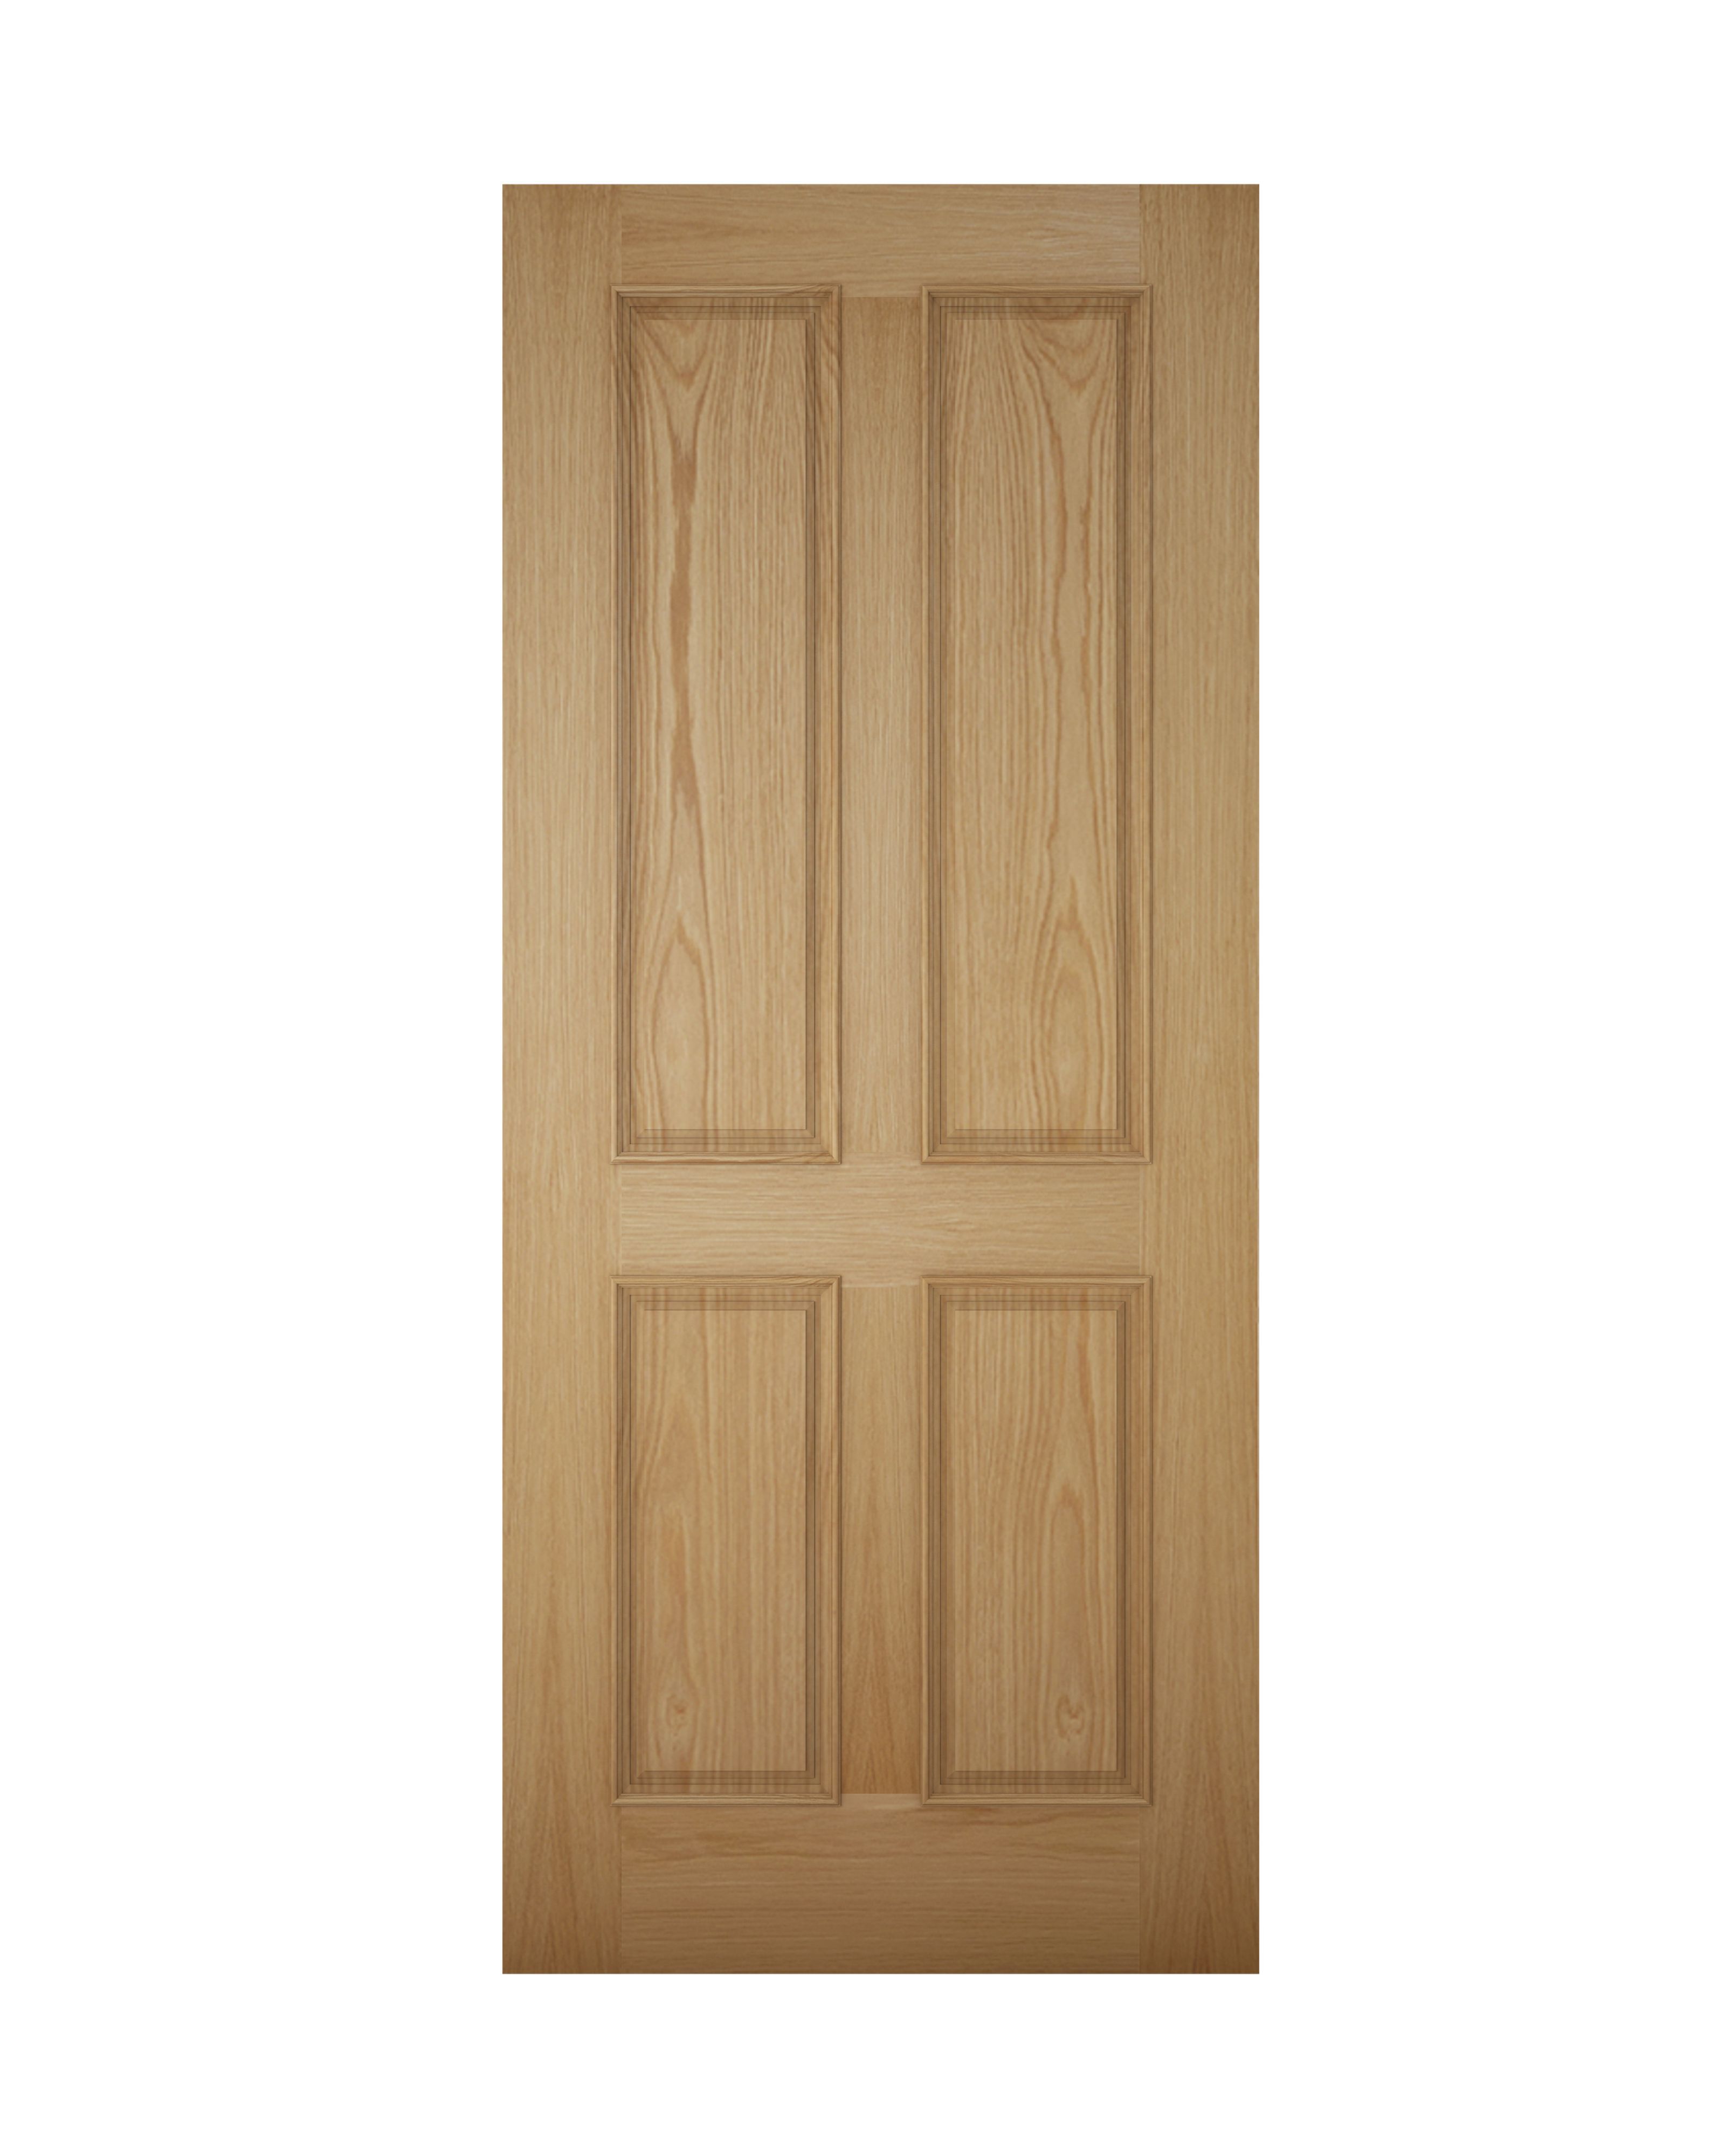 4 panel Raised moulding White oak veneer Left & RHed Front Door set & letter plate, (H)2125mm (W)907mm